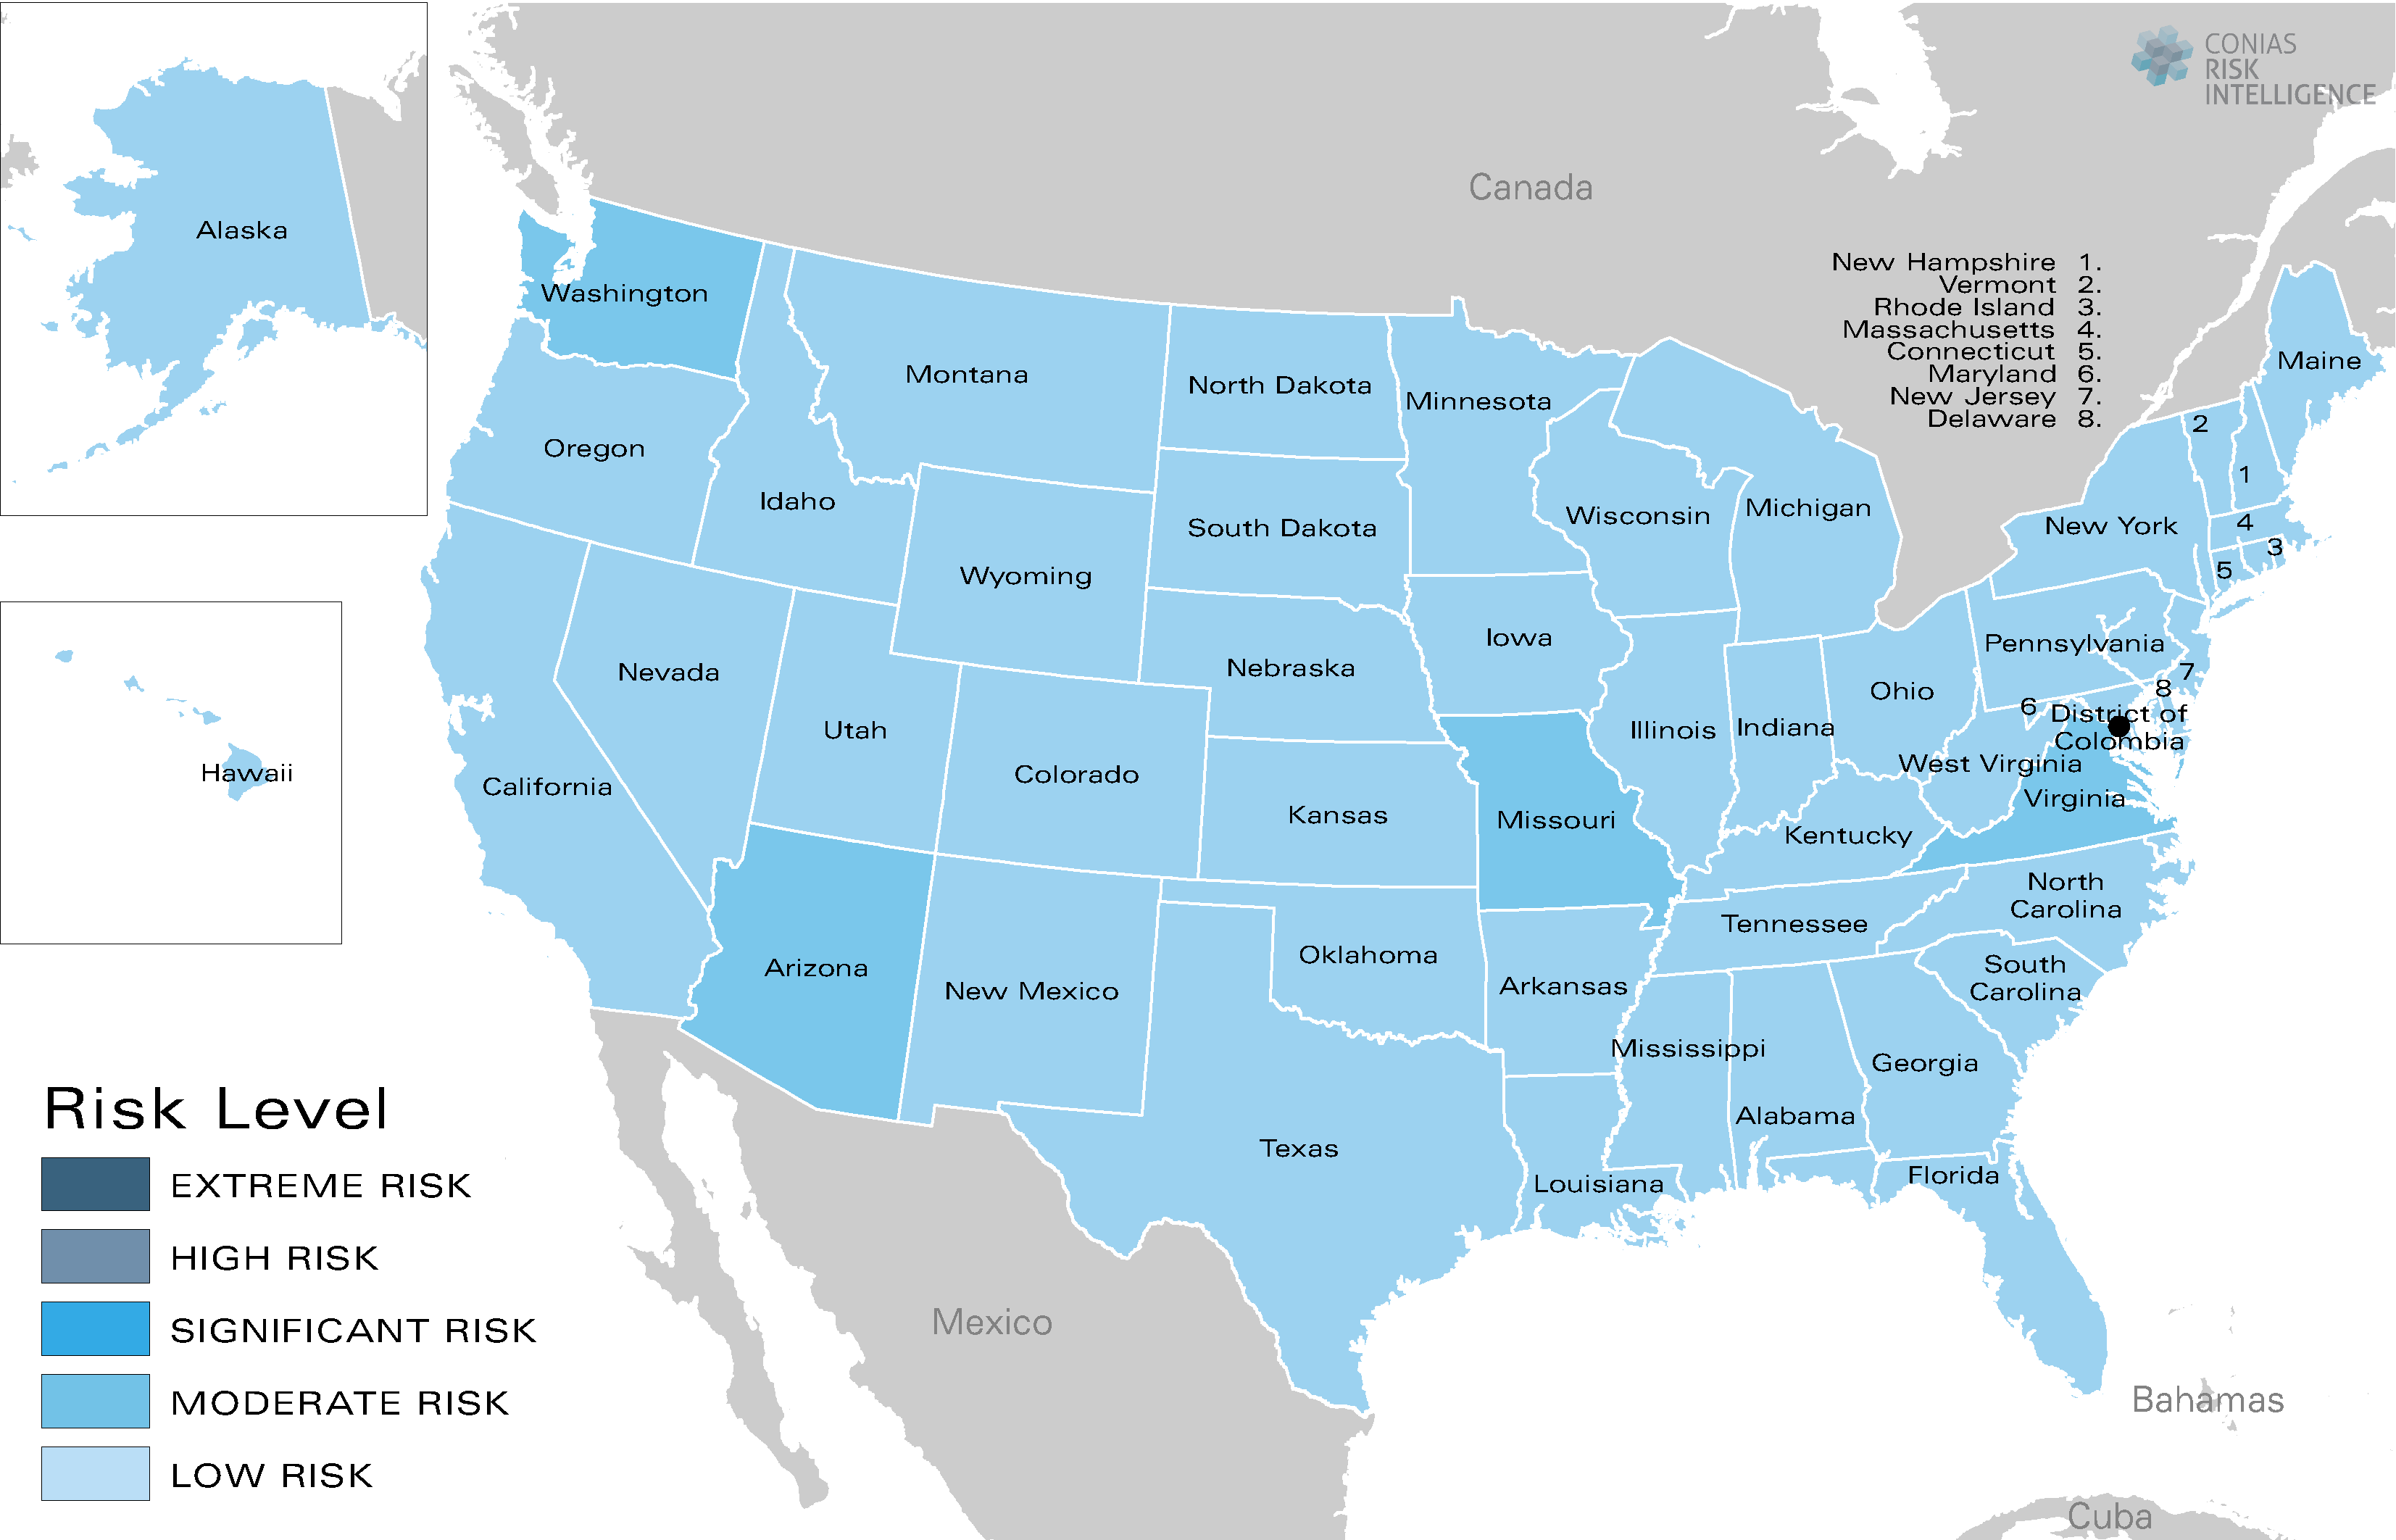 CONIAS Political Risk Maps USA